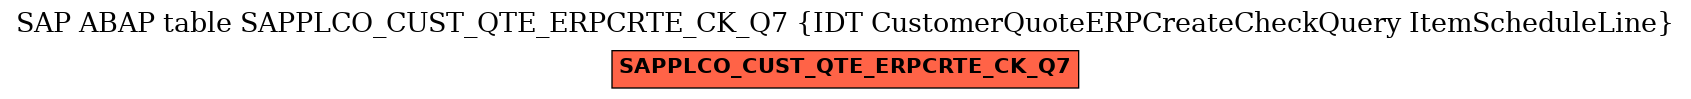 E-R Diagram for table SAPPLCO_CUST_QTE_ERPCRTE_CK_Q7 (IDT CustomerQuoteERPCreateCheckQuery ItemScheduleLine)